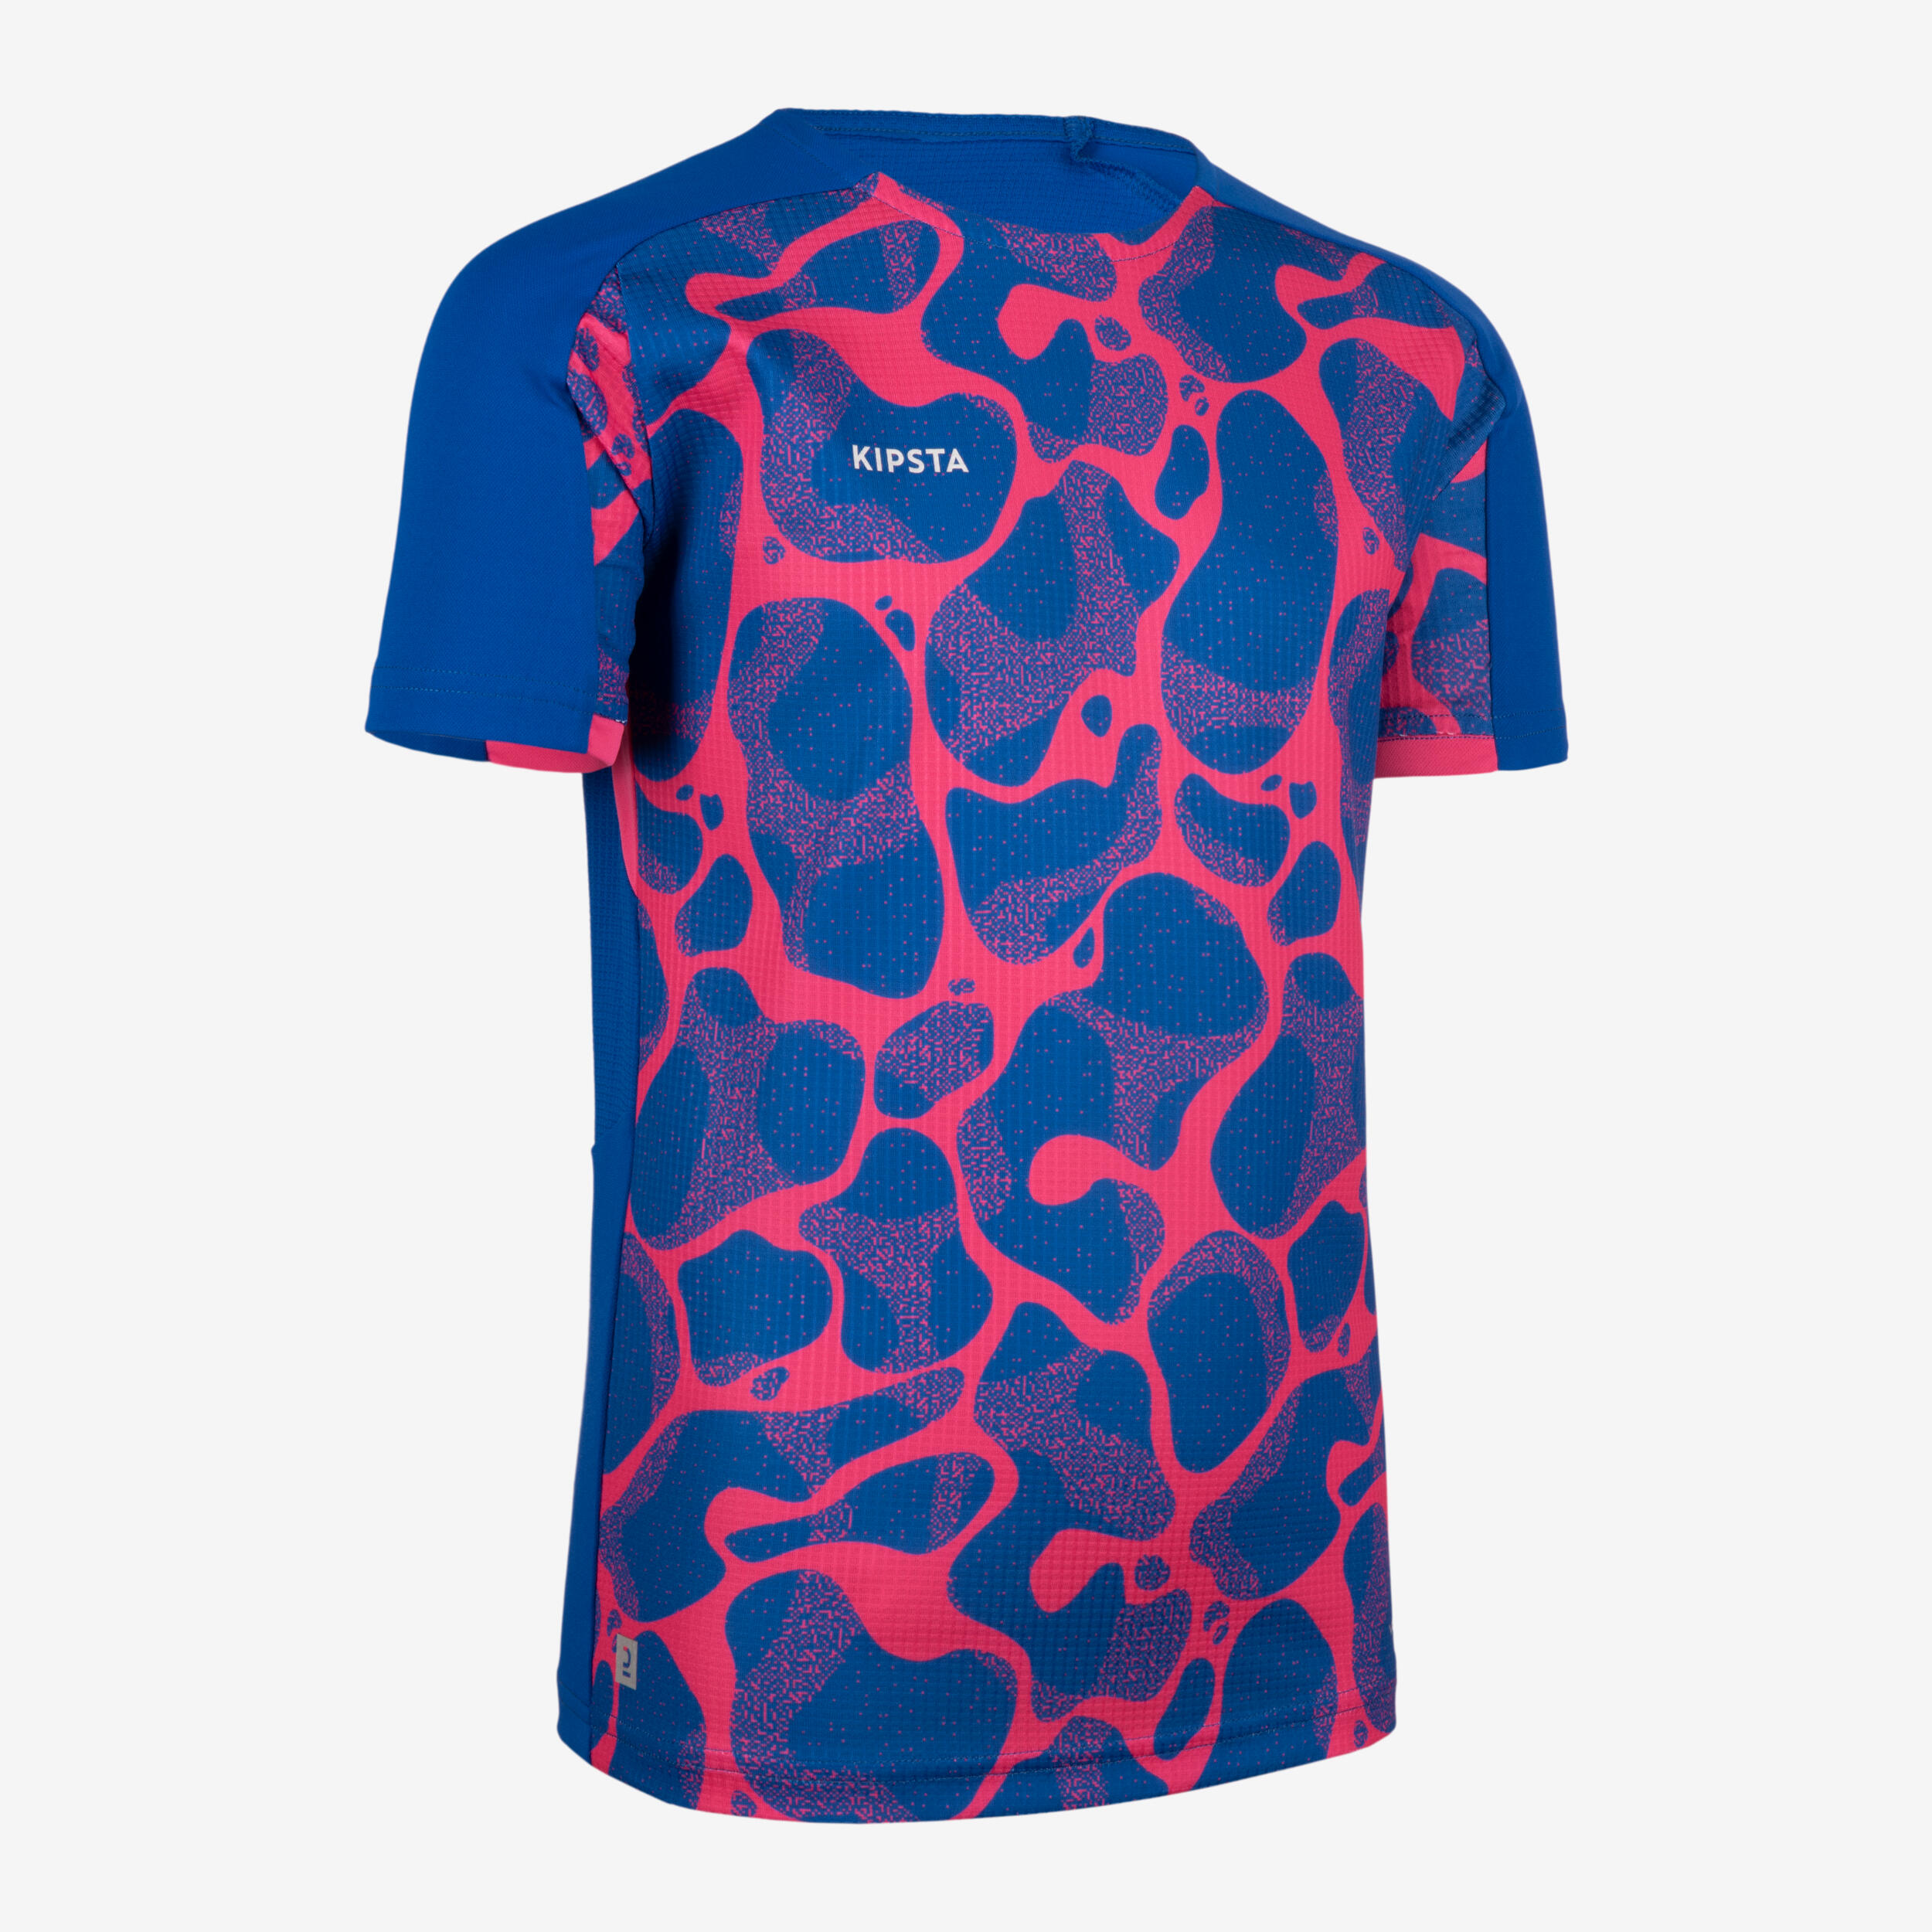 Kids' Football Short-Sleeved Shirt Viralto - Aqua Blue/Pink 1/6